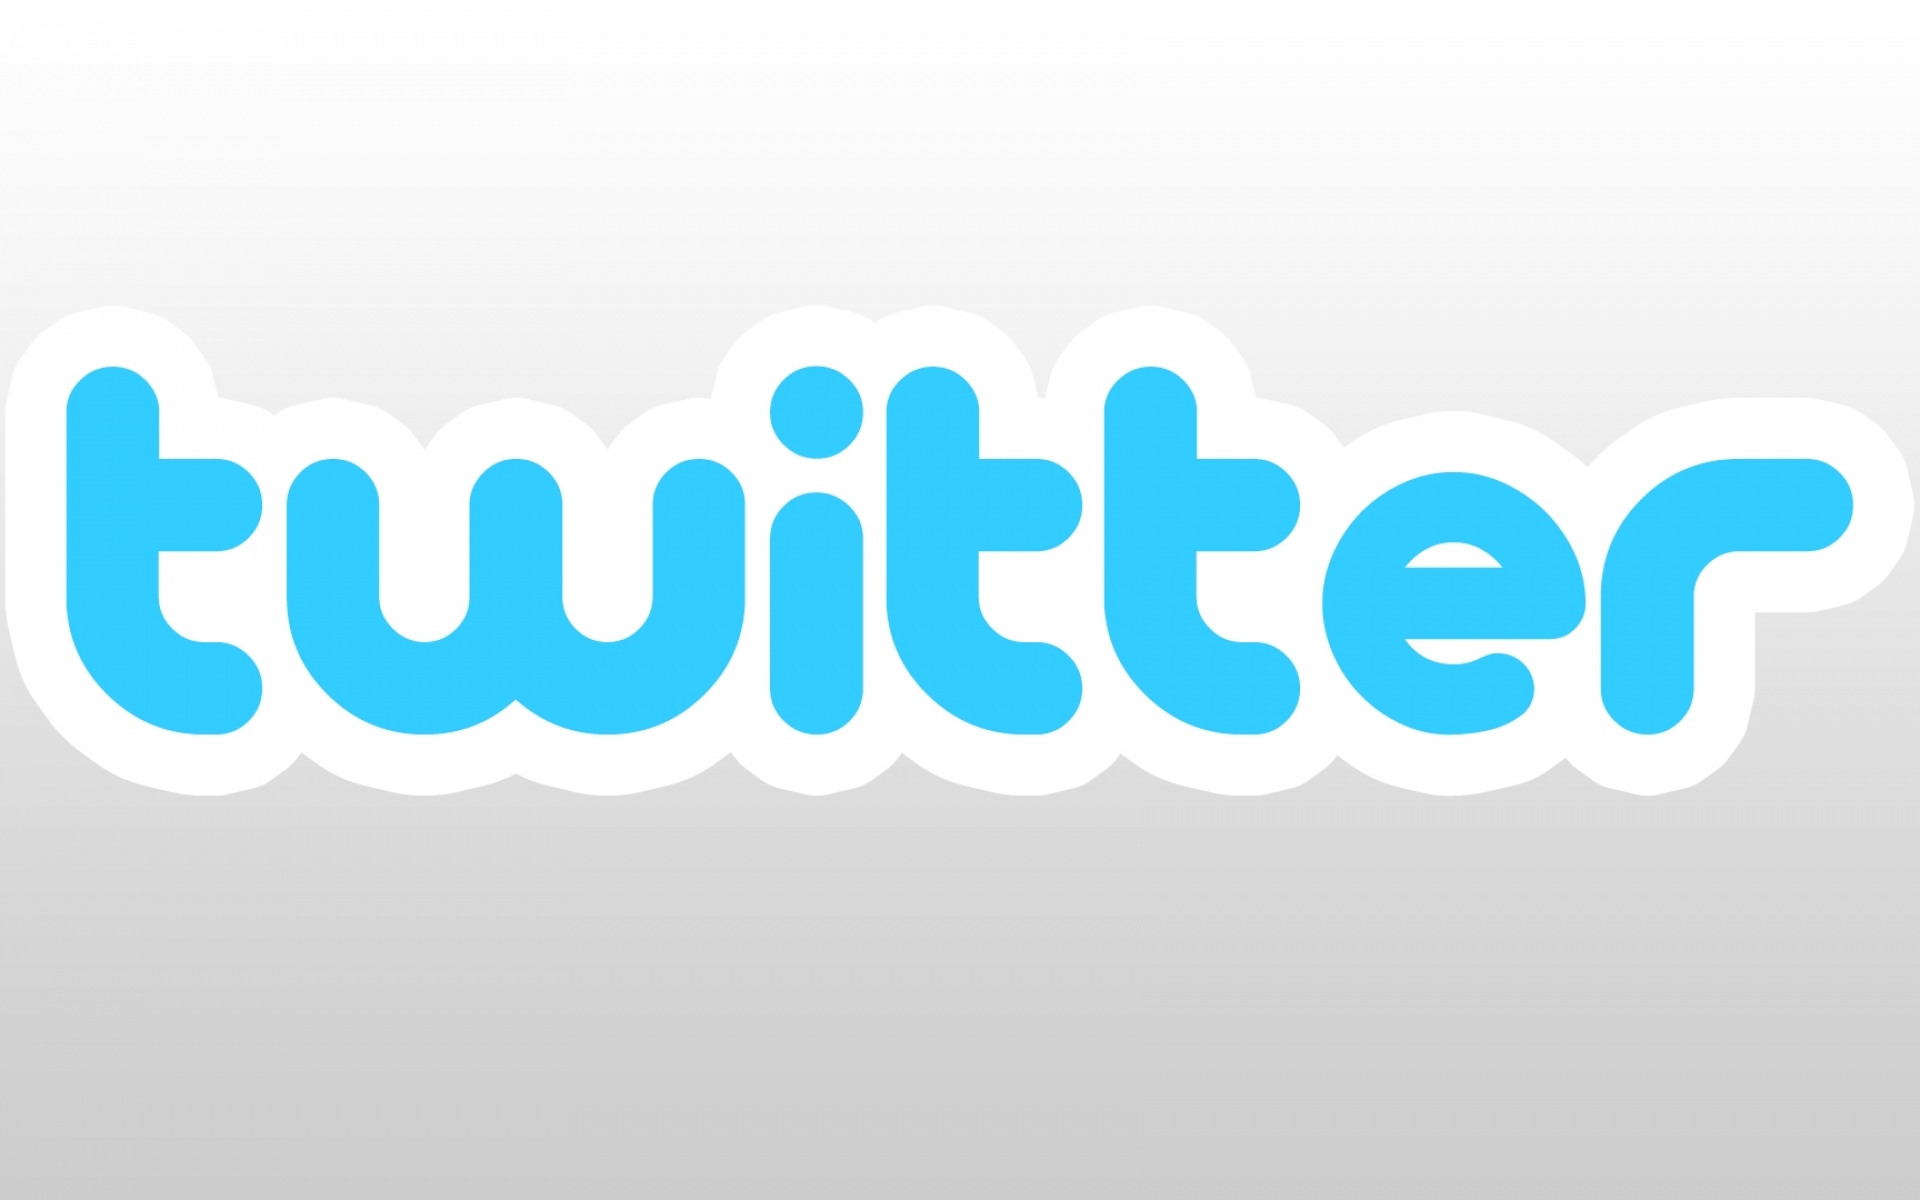 Картинки Твиттер, логотип, микроблог, синий фото и обои на рабочий стол